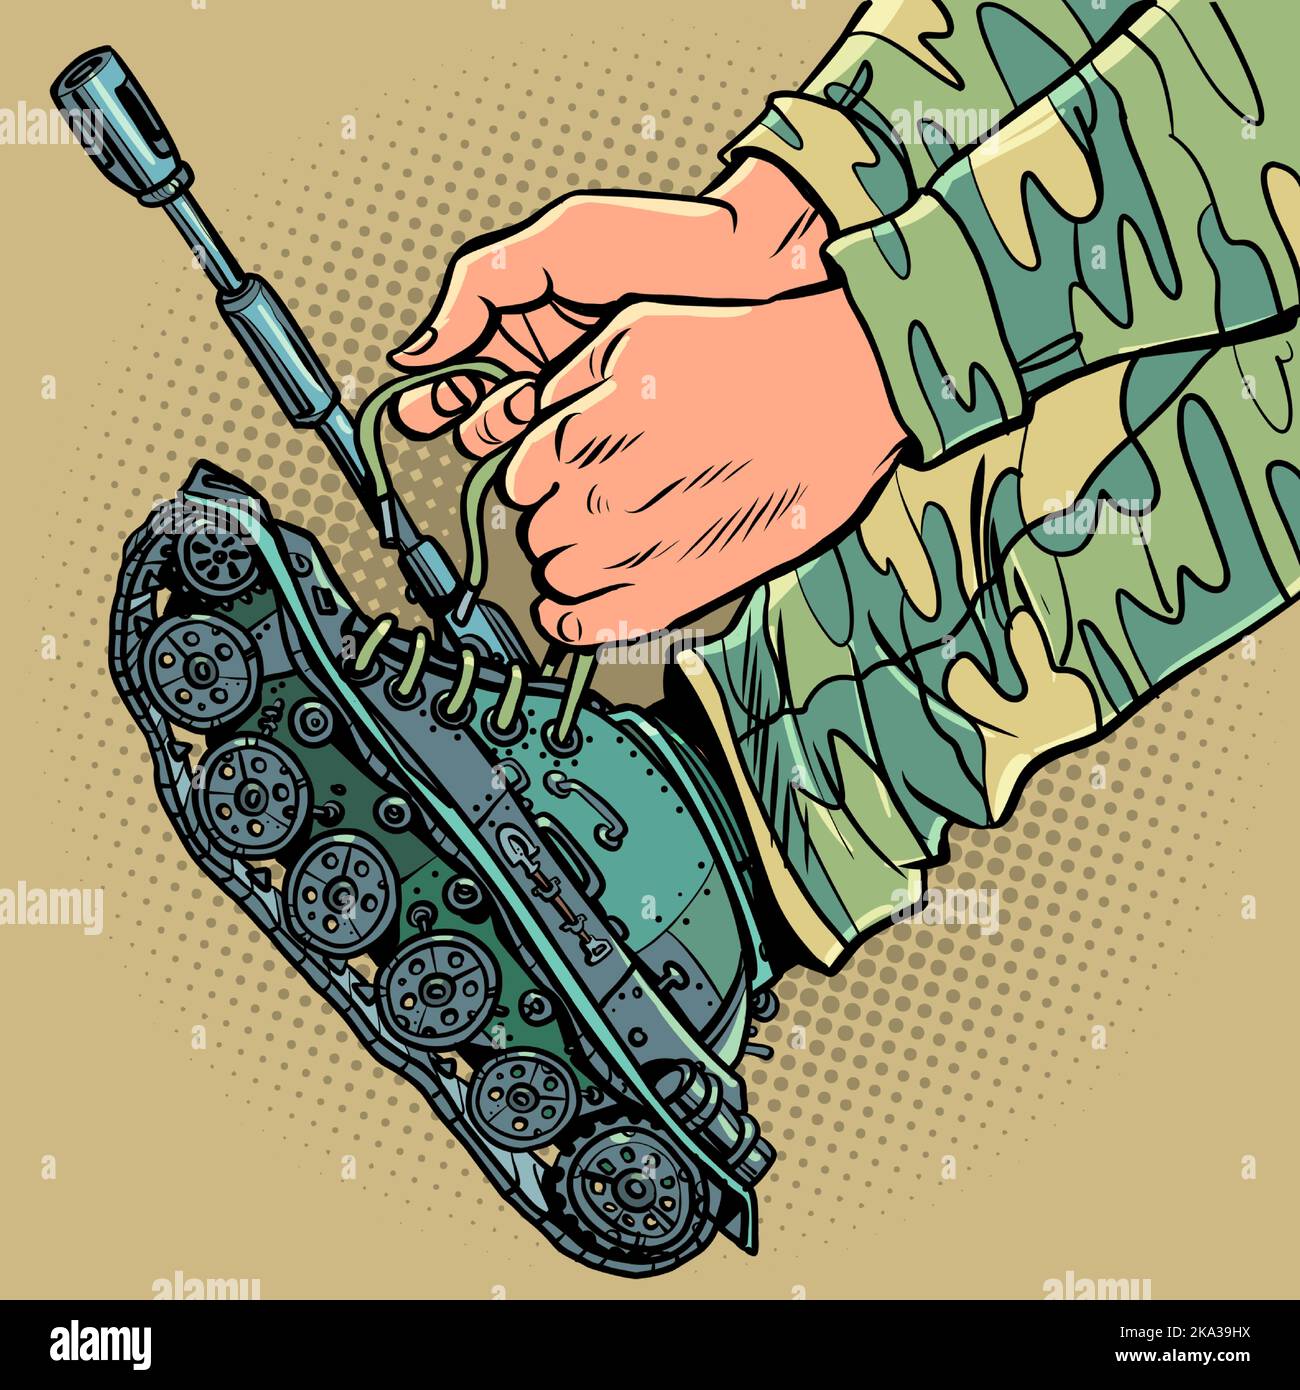 Un soldado uniformado se pone tanques en lugar de botas. Concepto de movilización militar de guerra Ilustración del Vector